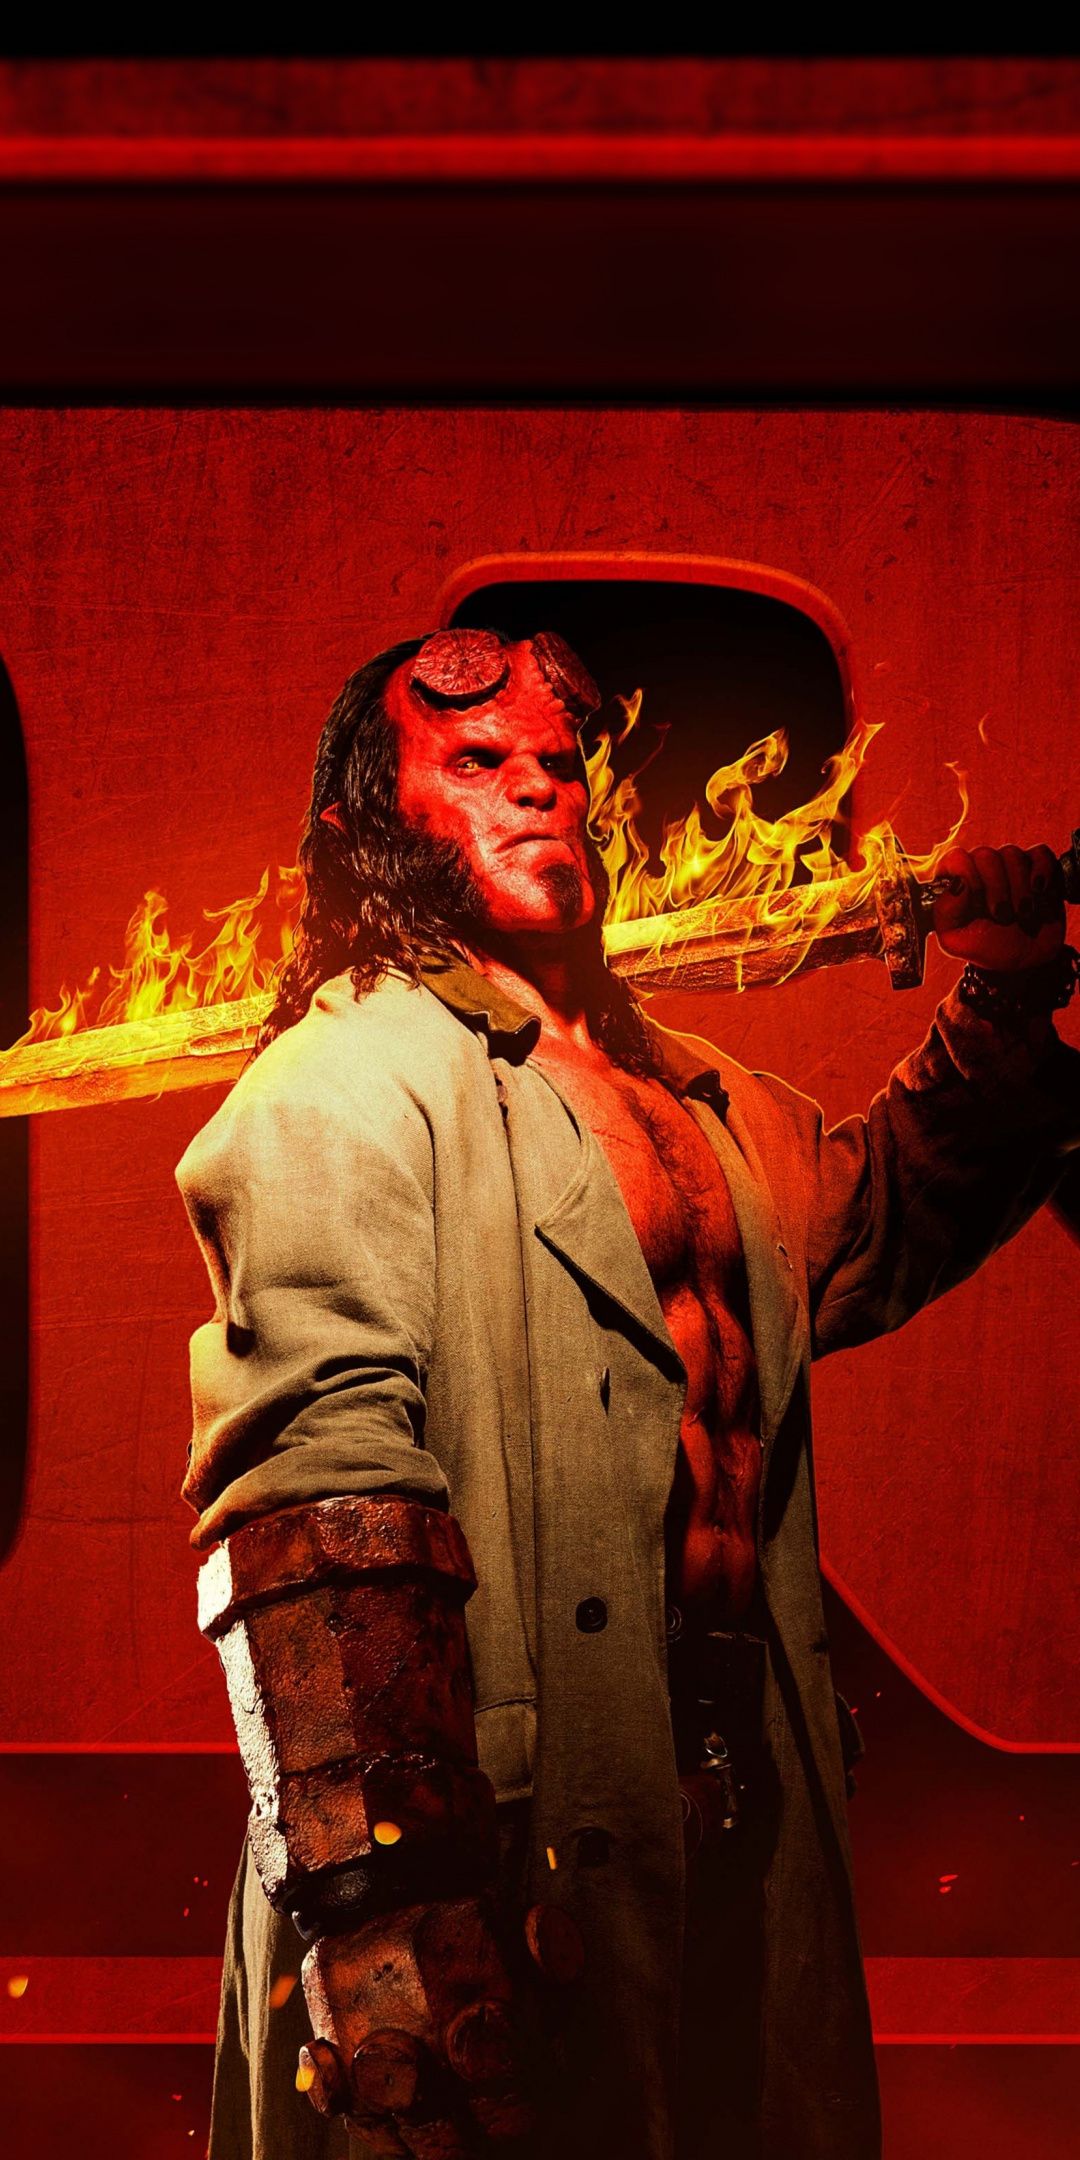 Hellboy Movie 2019 Still Image Wallpapers